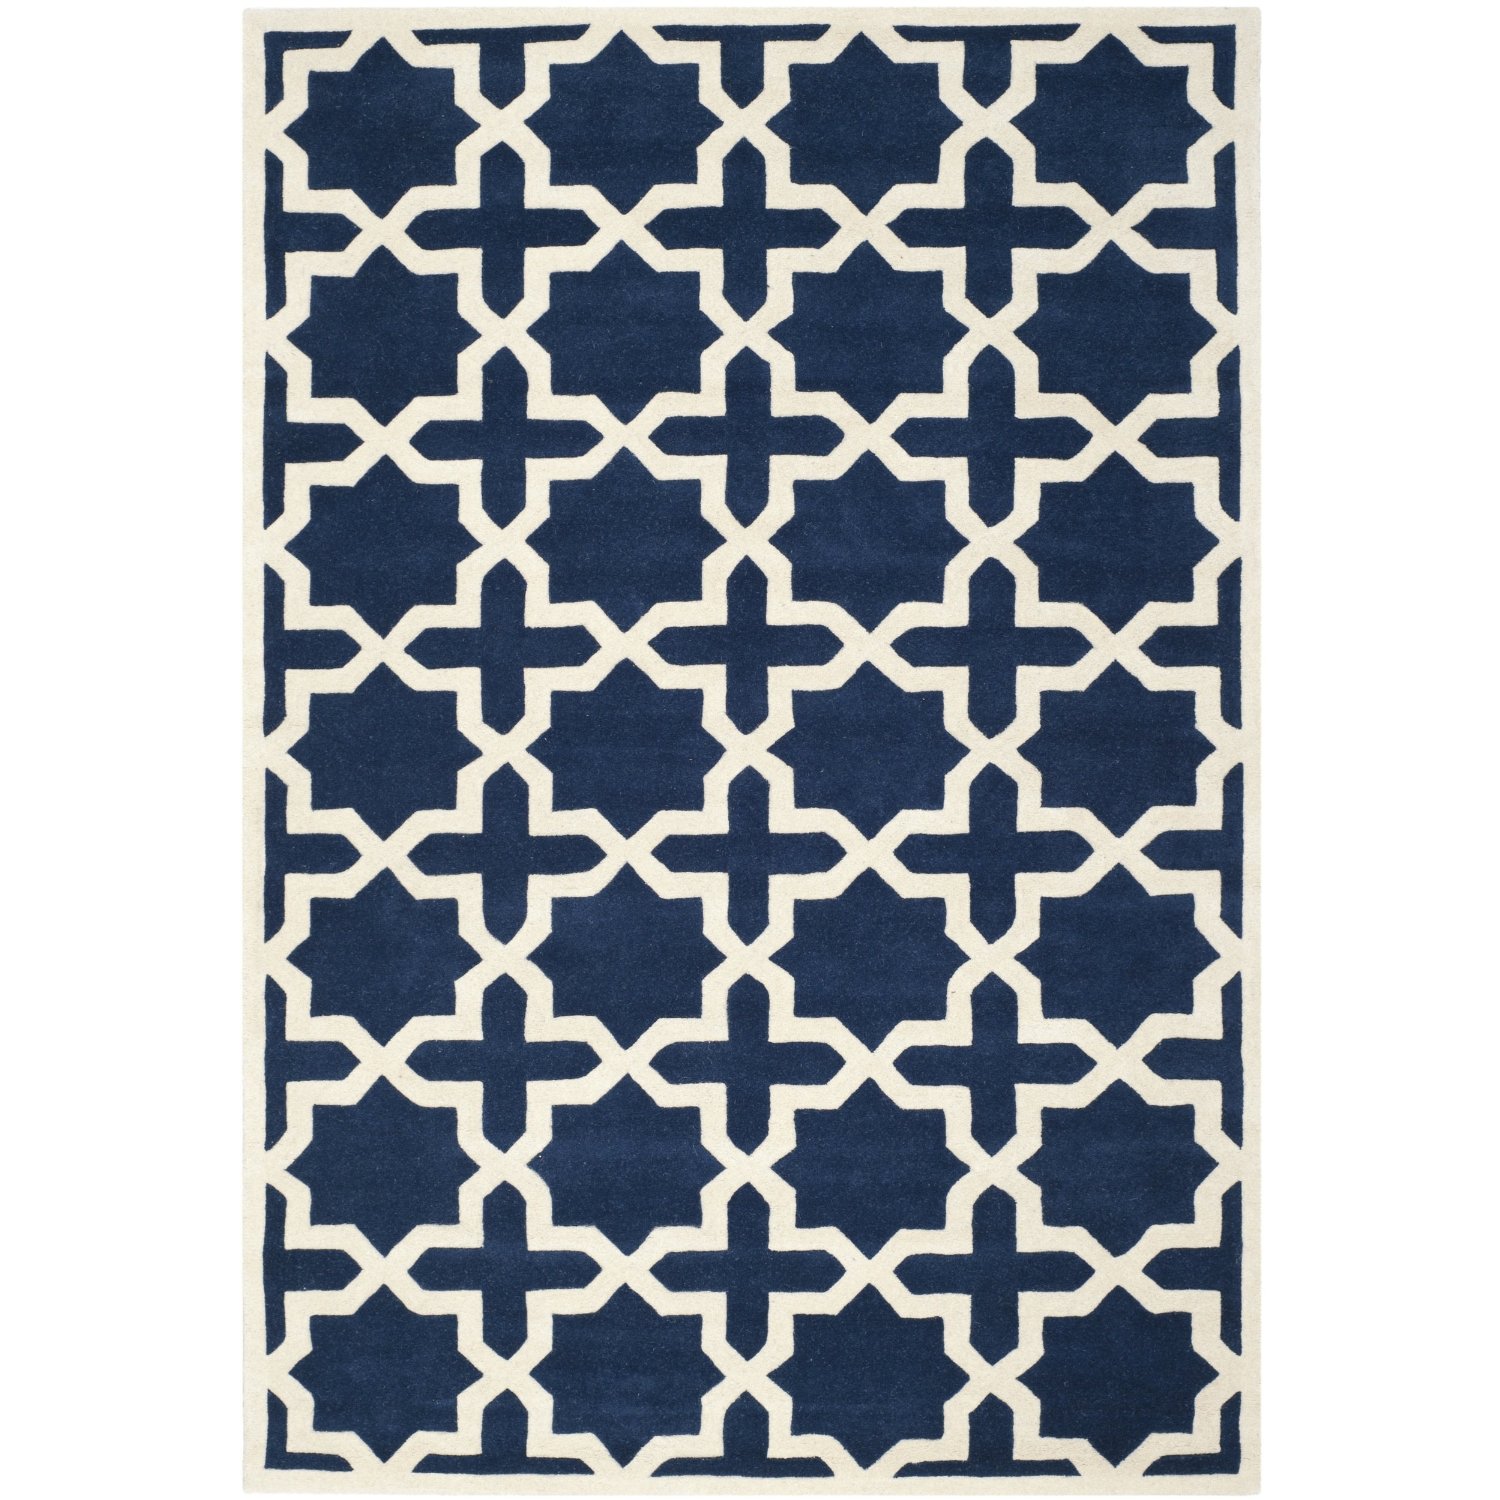 Teppich blau weiß muster